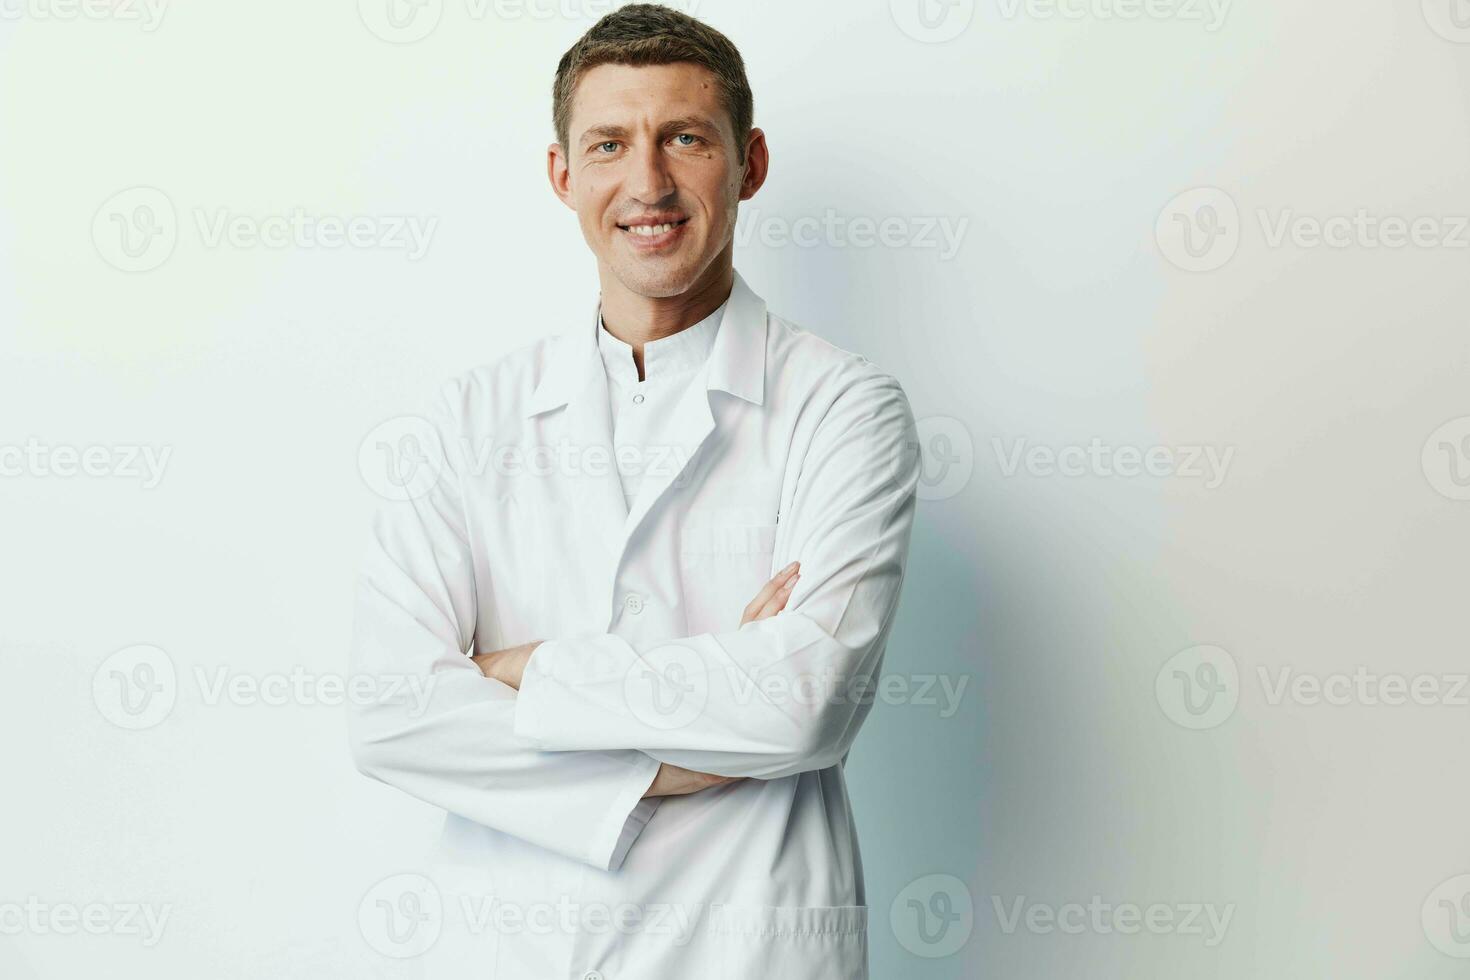 homme clinique médical adulte blanc Jeune la personne portrait stéthoscope manteau professionnel sourire médecin photo